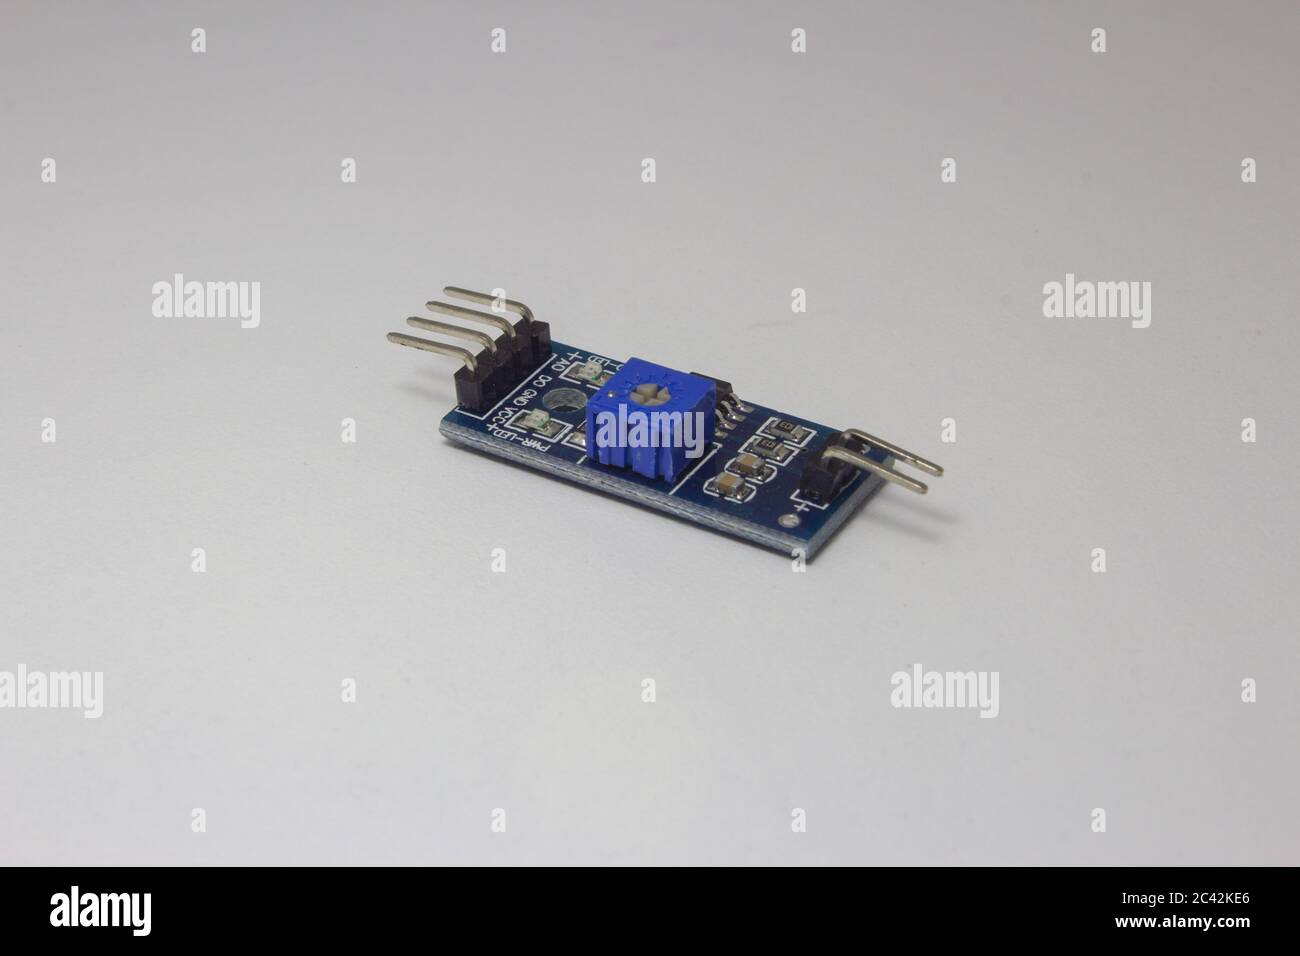 Bodenfeuchtemesssensor für arduino oder einen anderen elektronischen Mikrocontroller Stockfoto